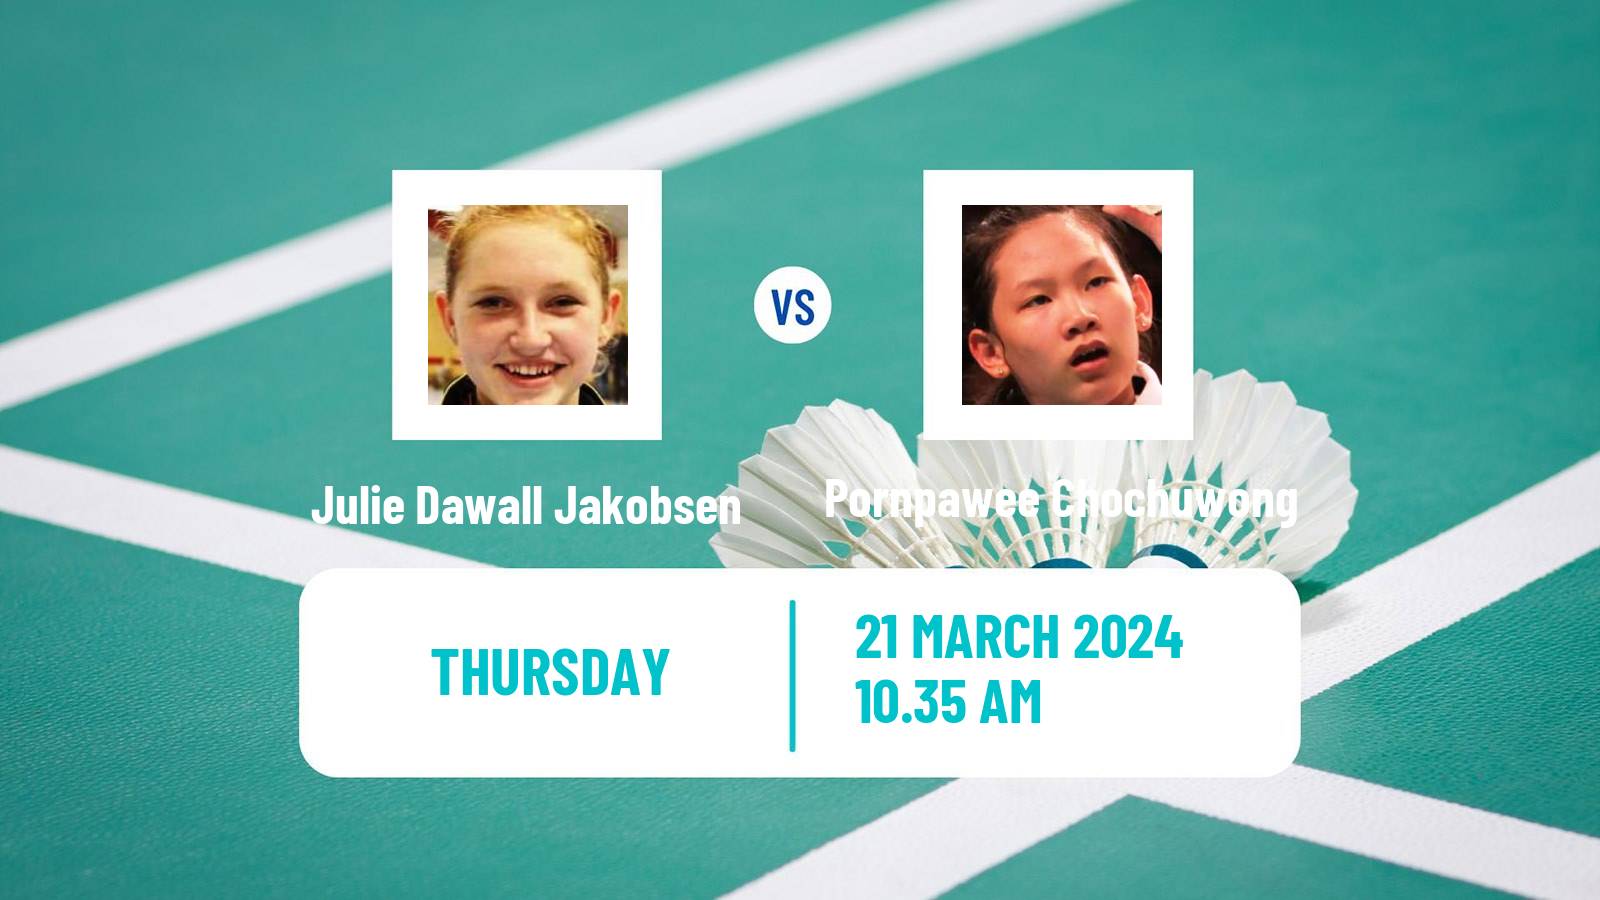 Badminton BWF World Tour Swiss Open Women Julie Dawall Jakobsen - Pornpawee Chochuwong